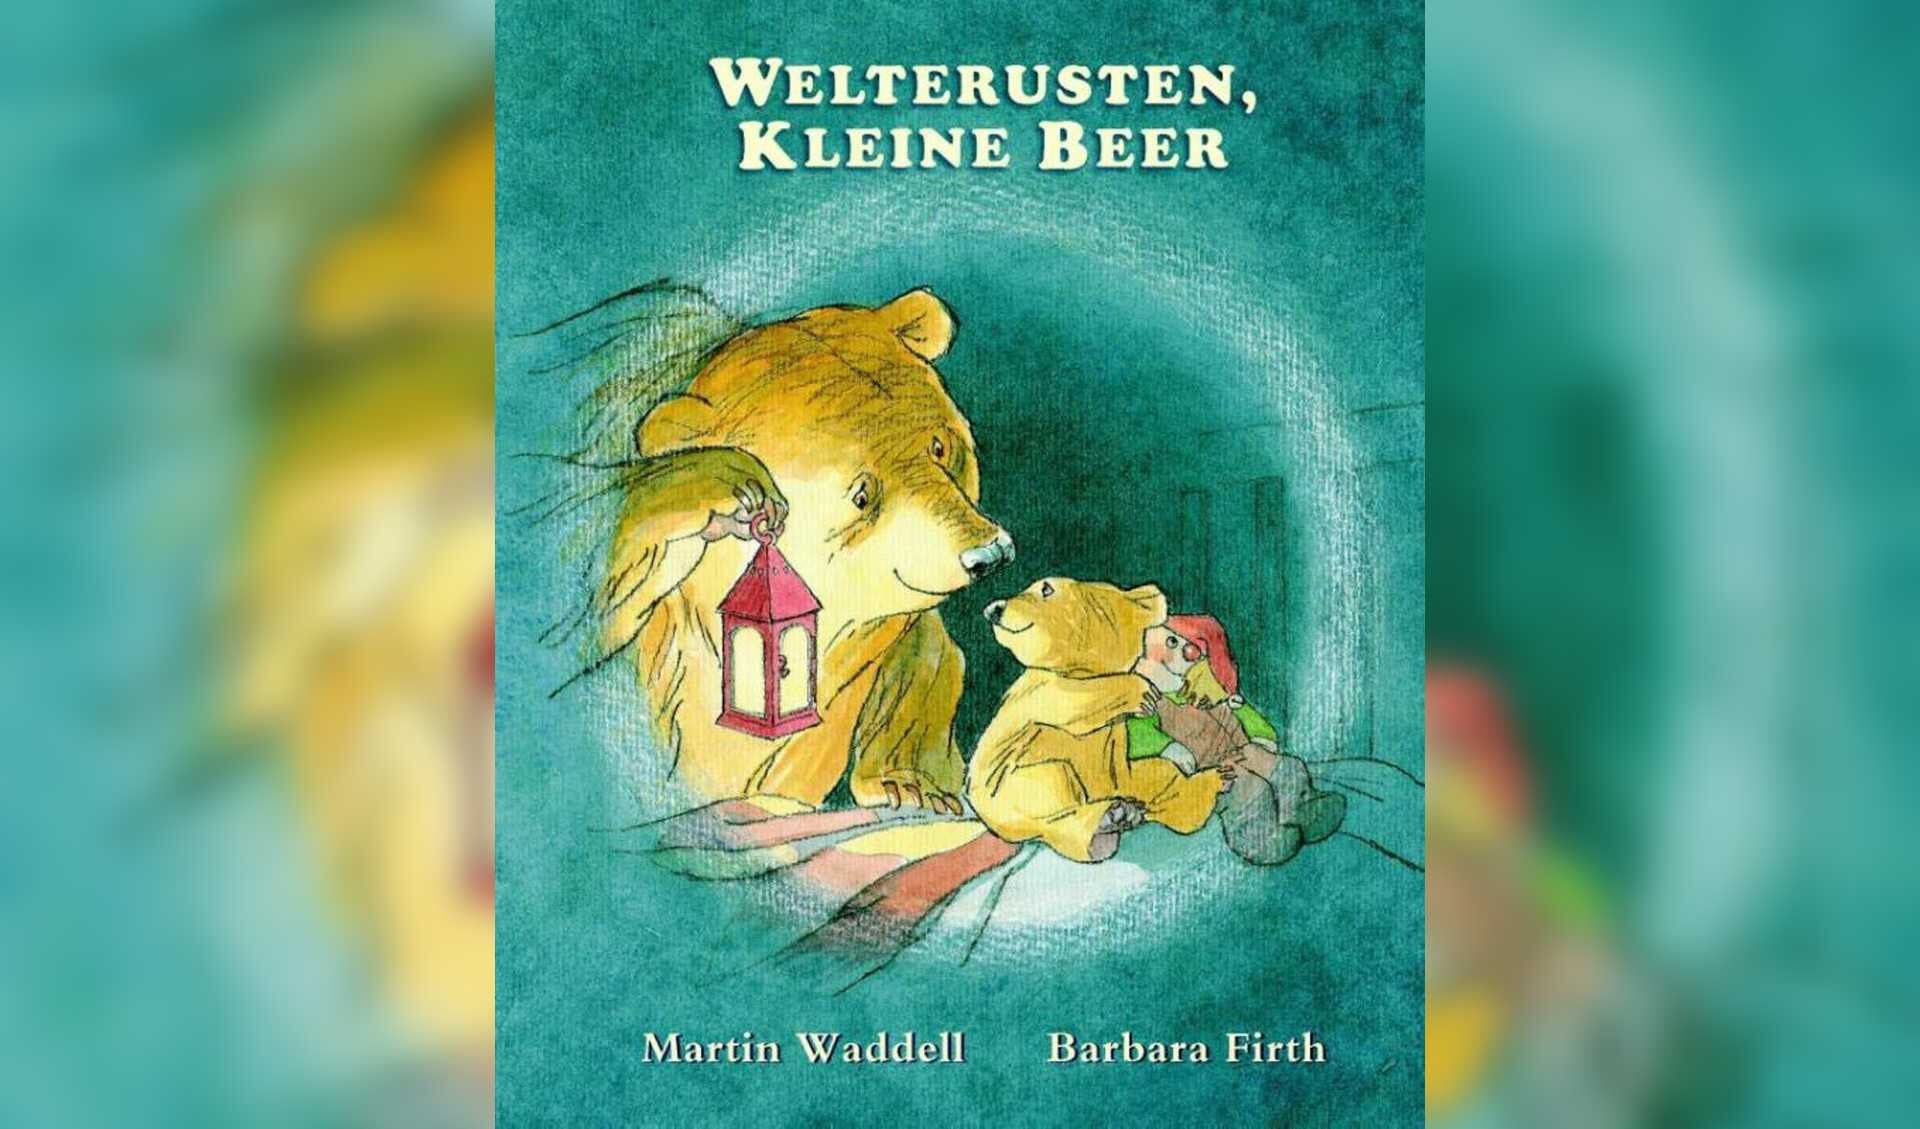 De kinderen beleven samen het verhaal van Kleine beer aan de hand van het prentenboek van Martin Waddell. 